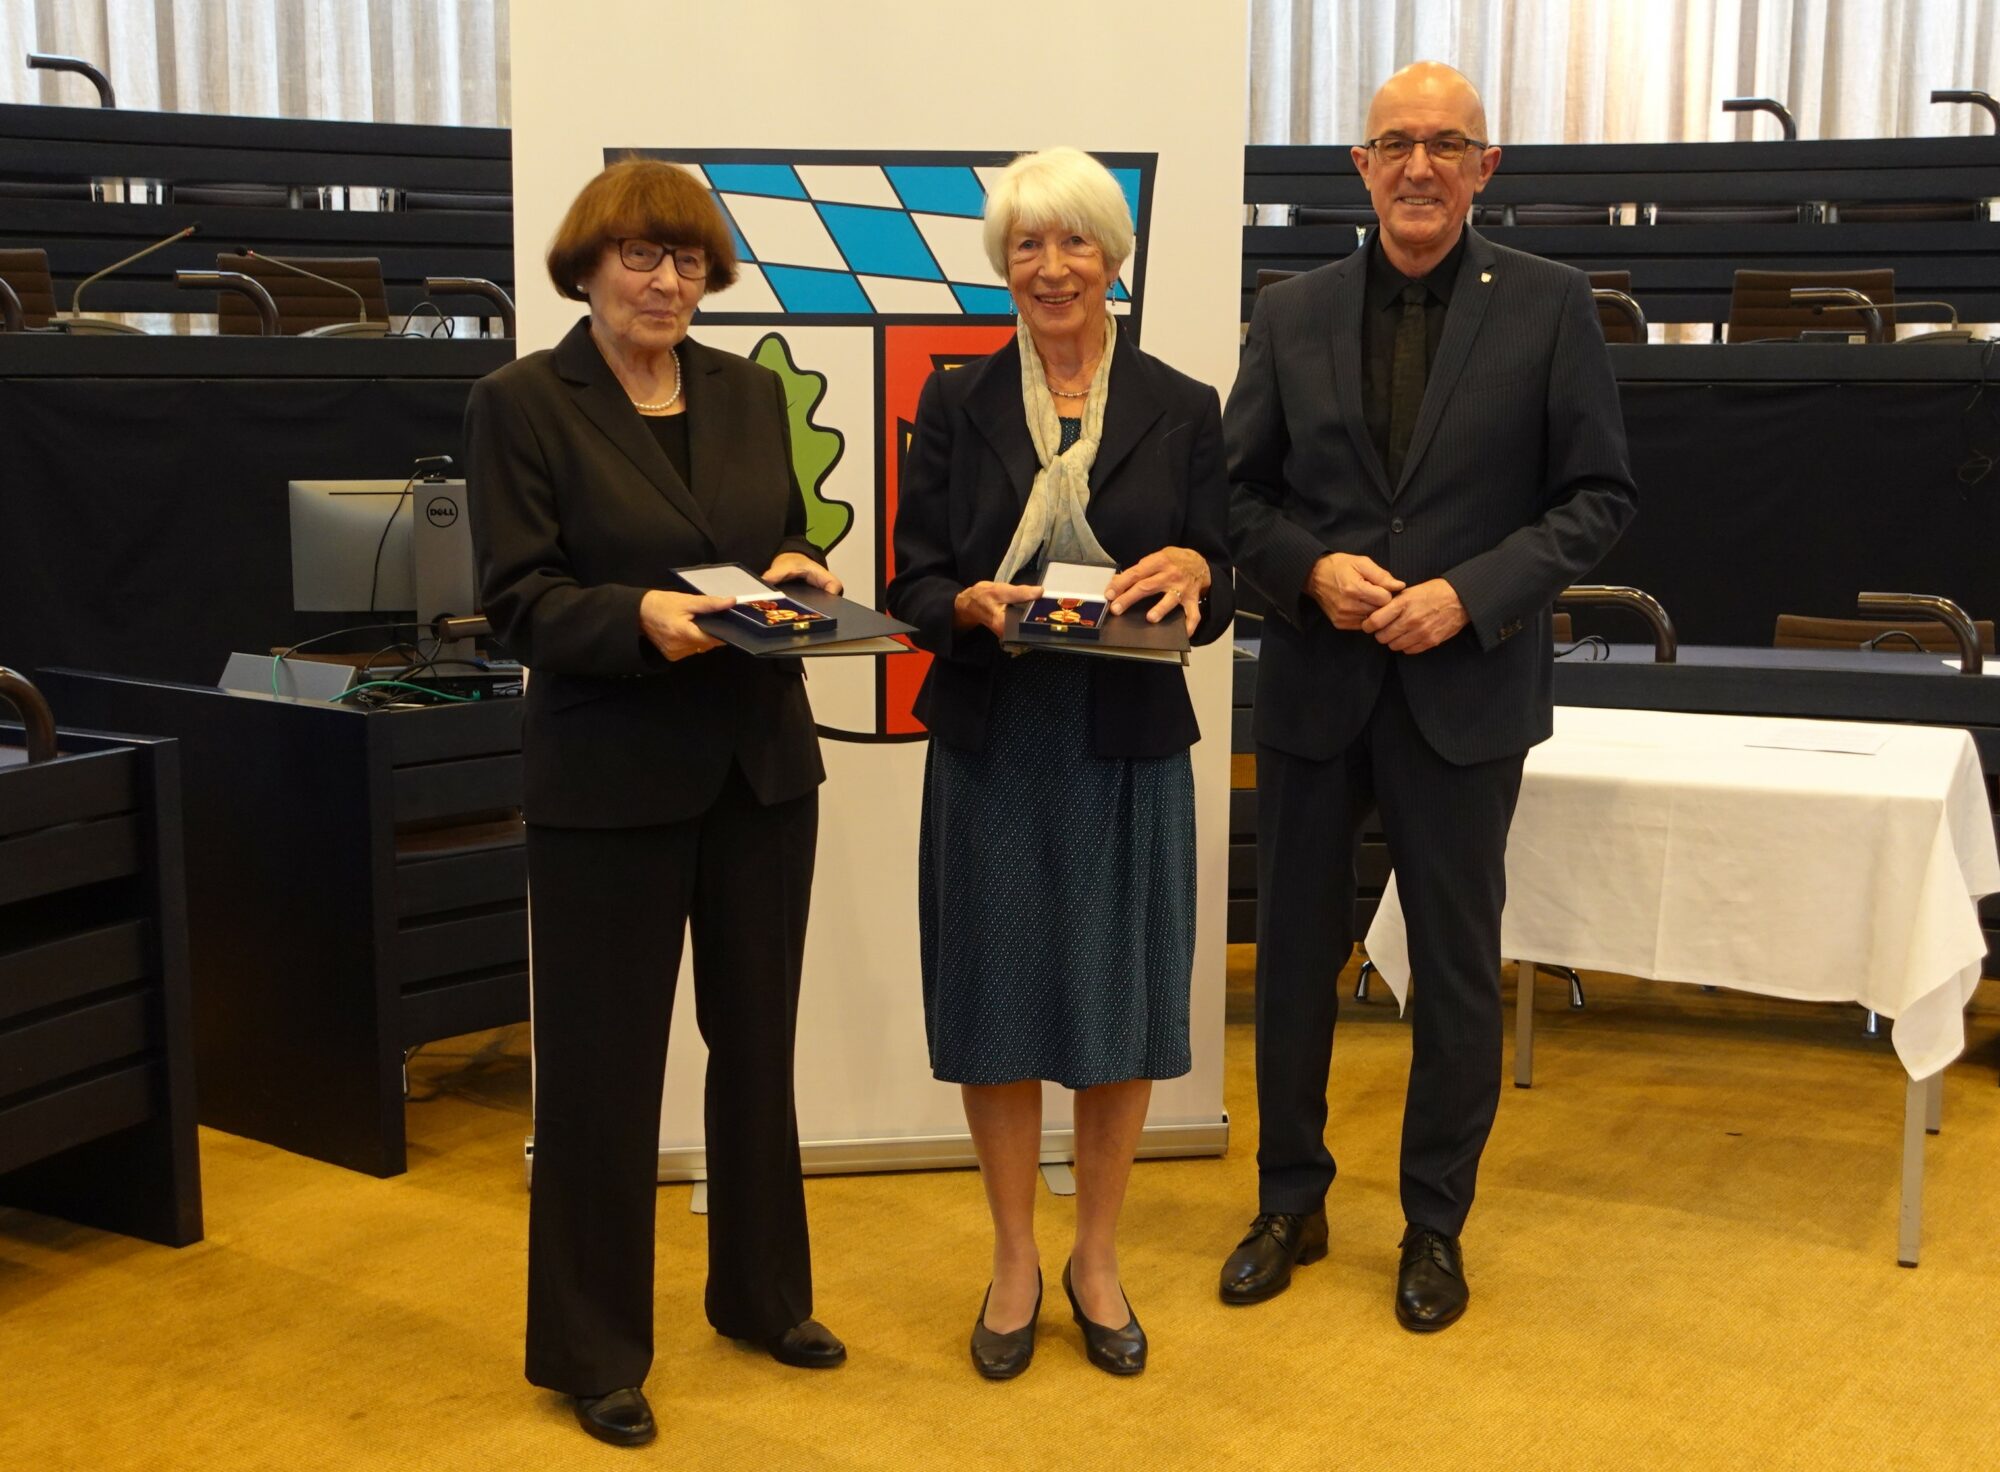 Ingrid Hansen aus Dasing (links) und Hildegard Wessel aus Adelzhausen erhielten aus den Händen von Landrat Dr. Klaus Metzger für ihr großartiges Engagement die Verdienstmedaille des Verdienstordens der Bundesrepublik Deutschland.